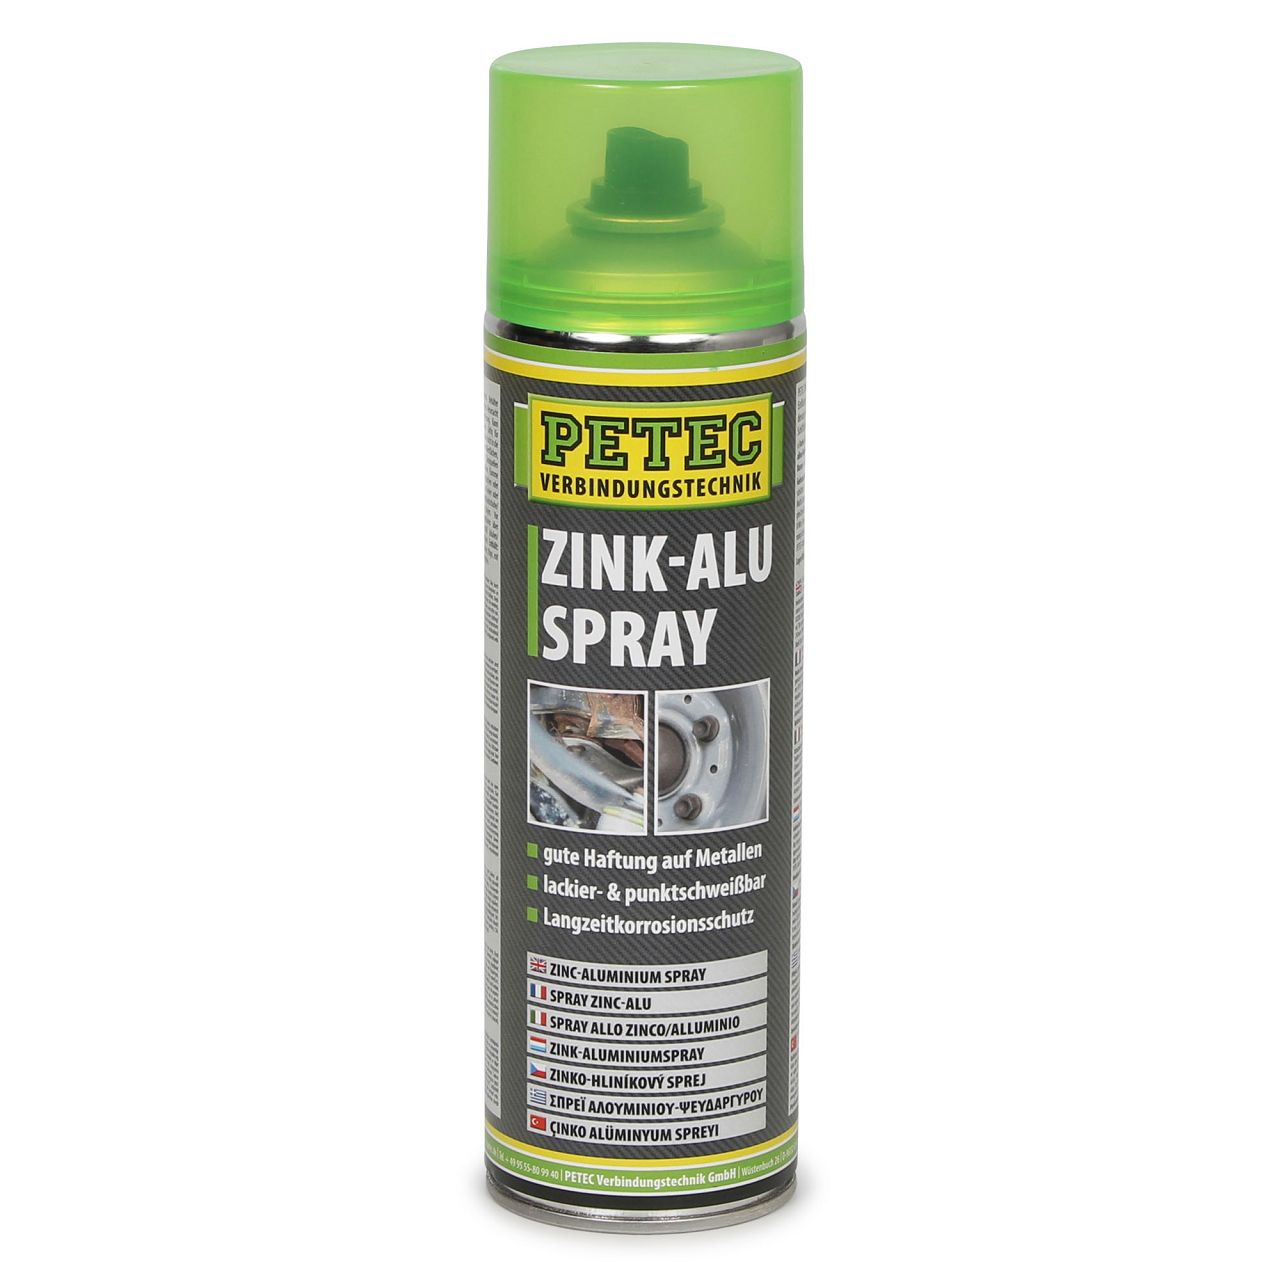 PETEC 71050 Zink-Alu Spray Rostschutzgrundierung Korrosionsschutz 500ml